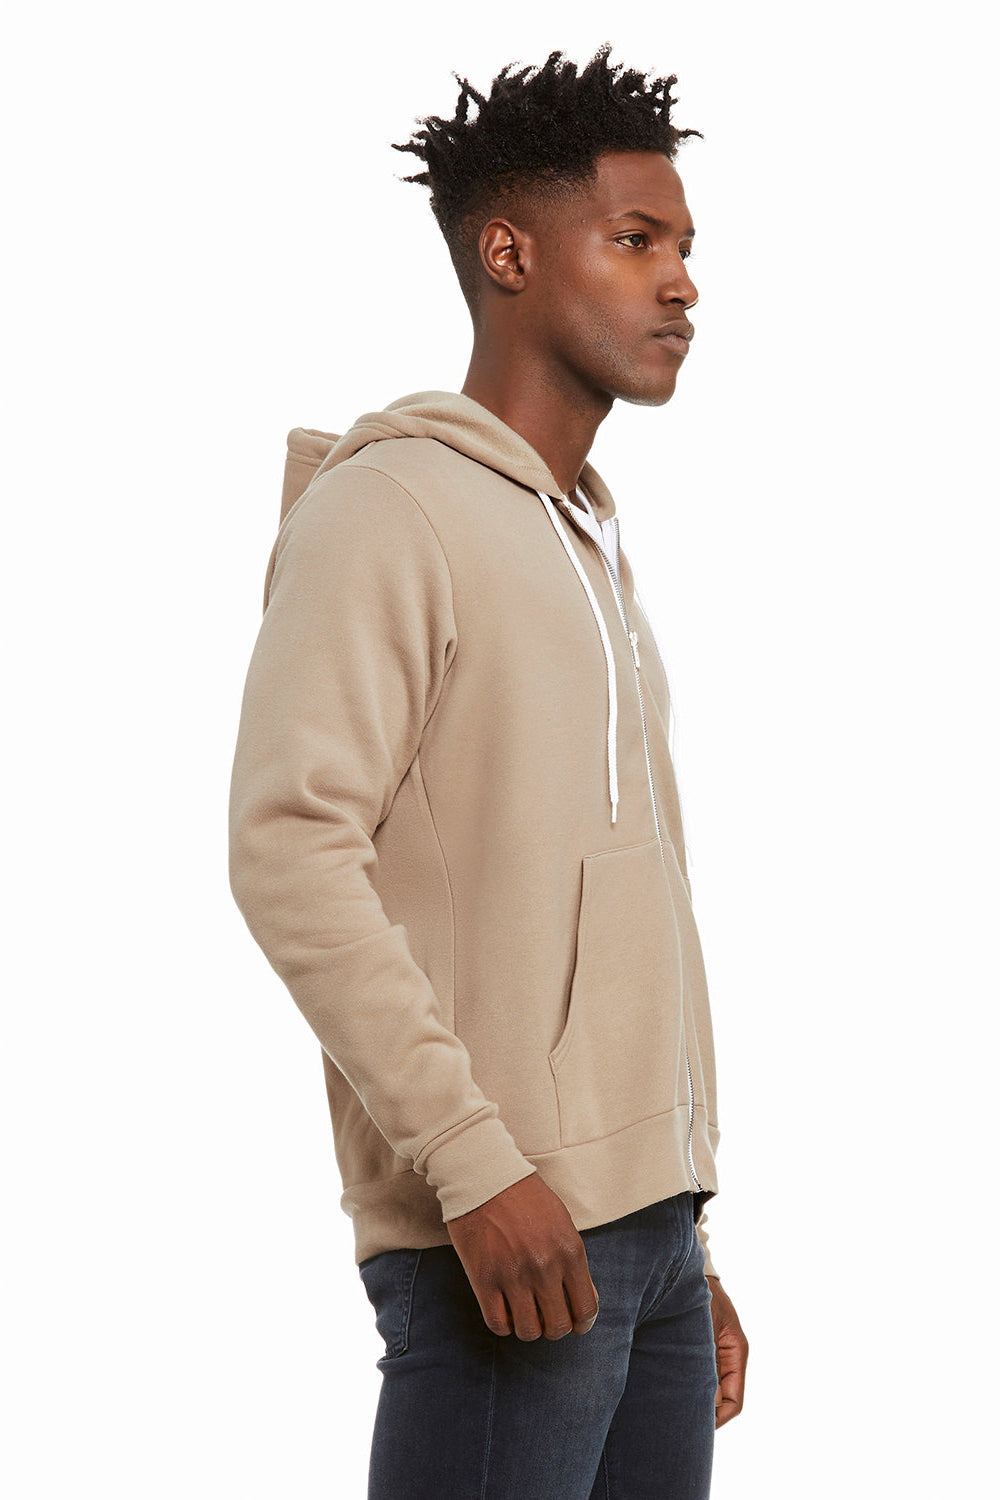 Bella + Canvas BC3739/3739 Mens Fleece Full Zip Hooded Sweatshirt Hoodie Tan Model Side